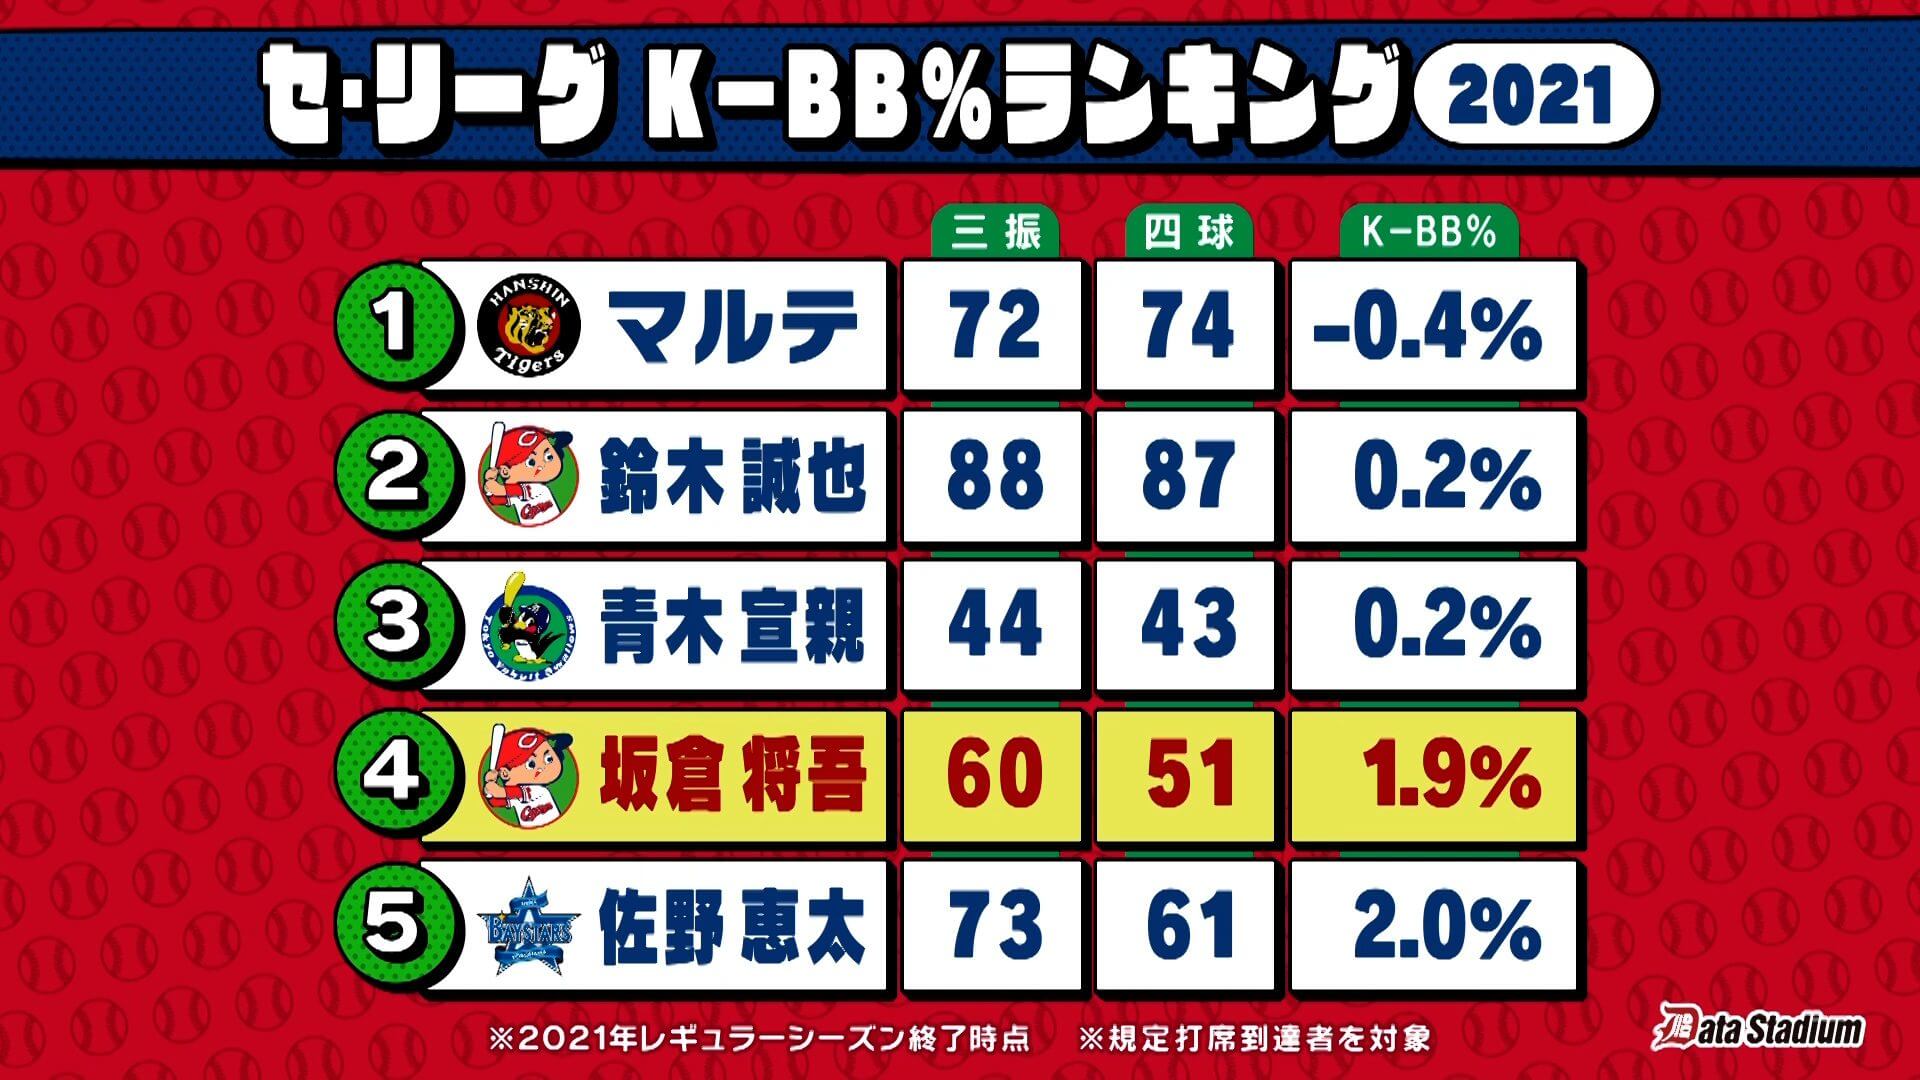 セ・リーグ K-BB%ランキング2021